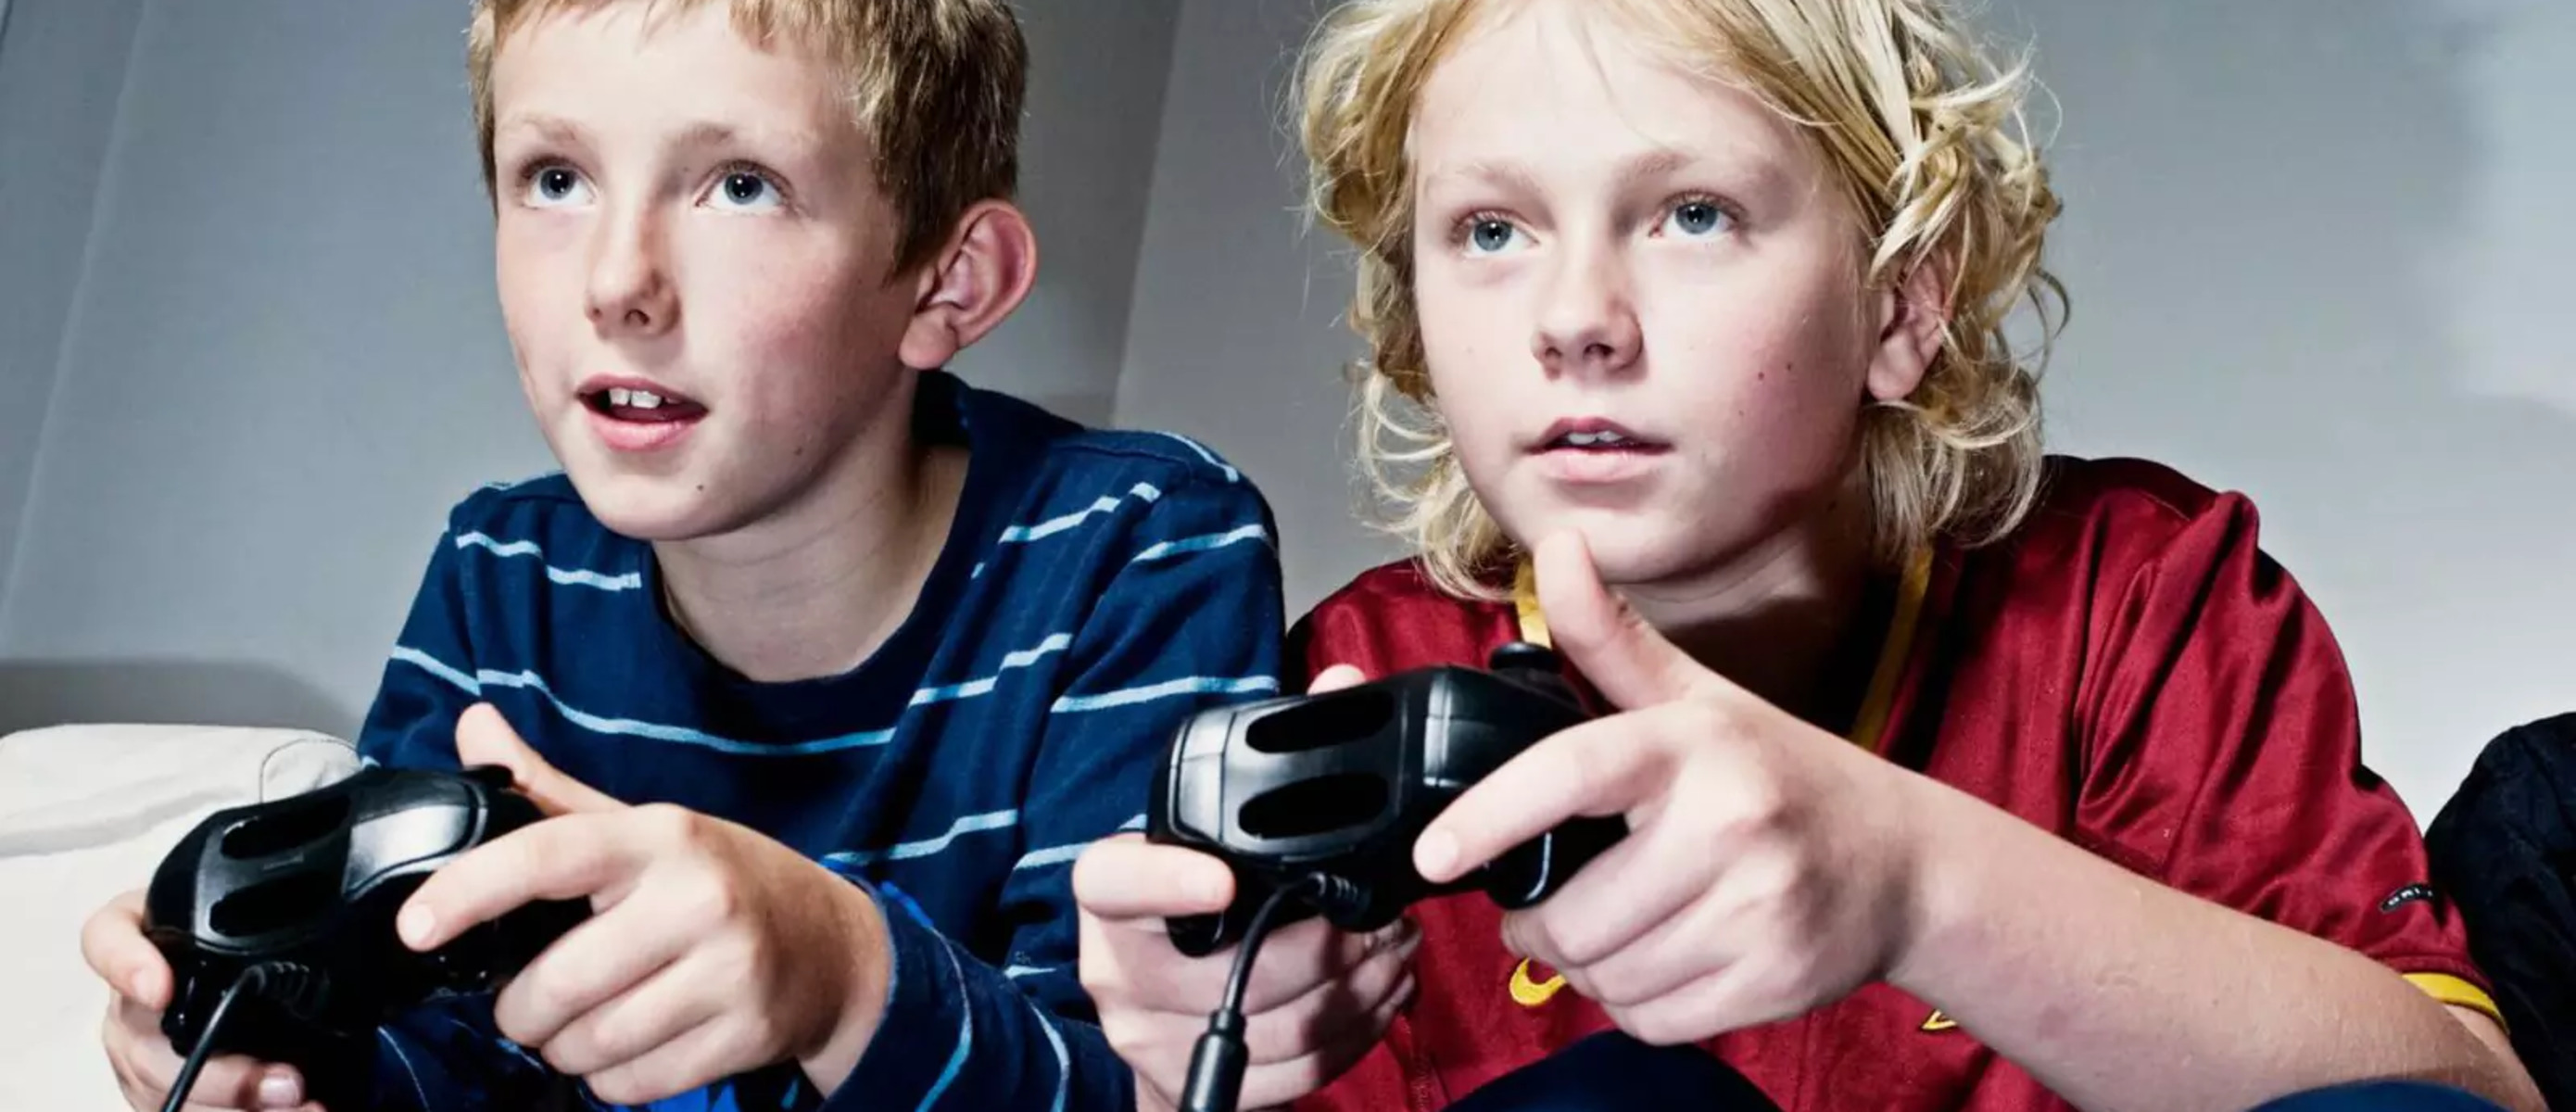 Социальные игры подростков. Дети играющие в компьютерные игры. Подростки играющие в компьютерные игры. Ребенок играющий в компьютерную игру. Увлечения подростков.